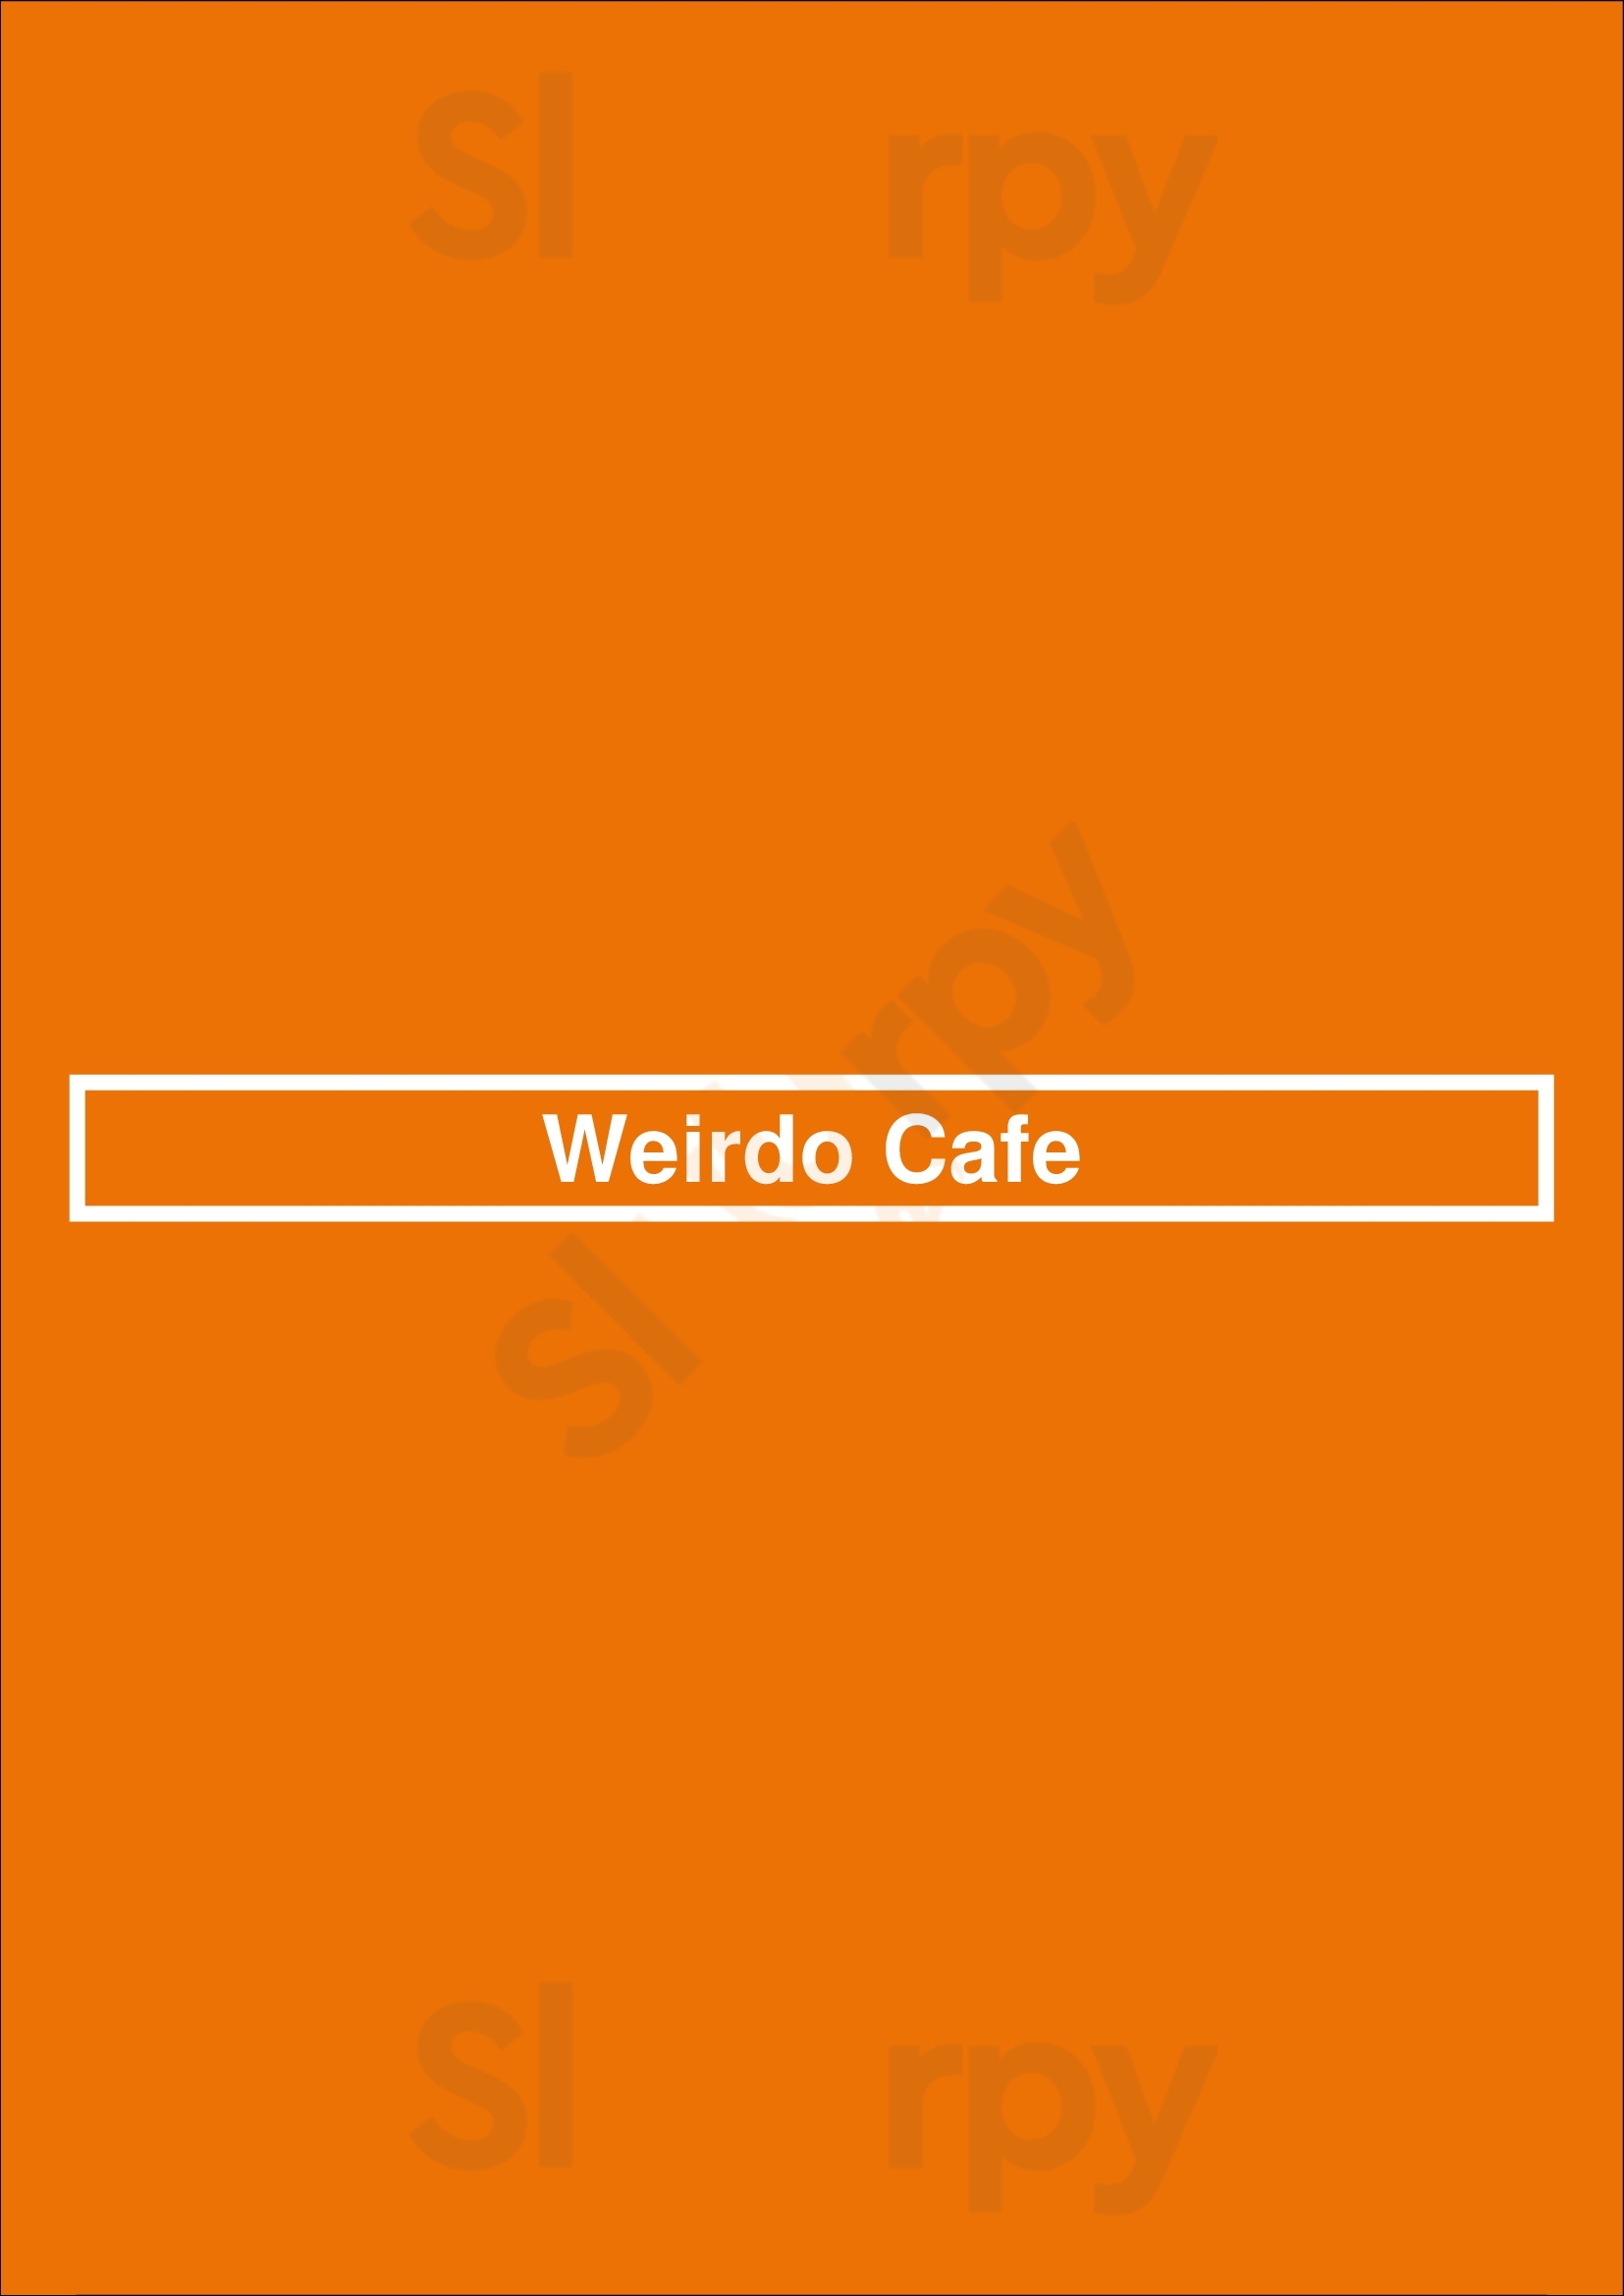 Weirdo Cafe Vancouver Menu - 1